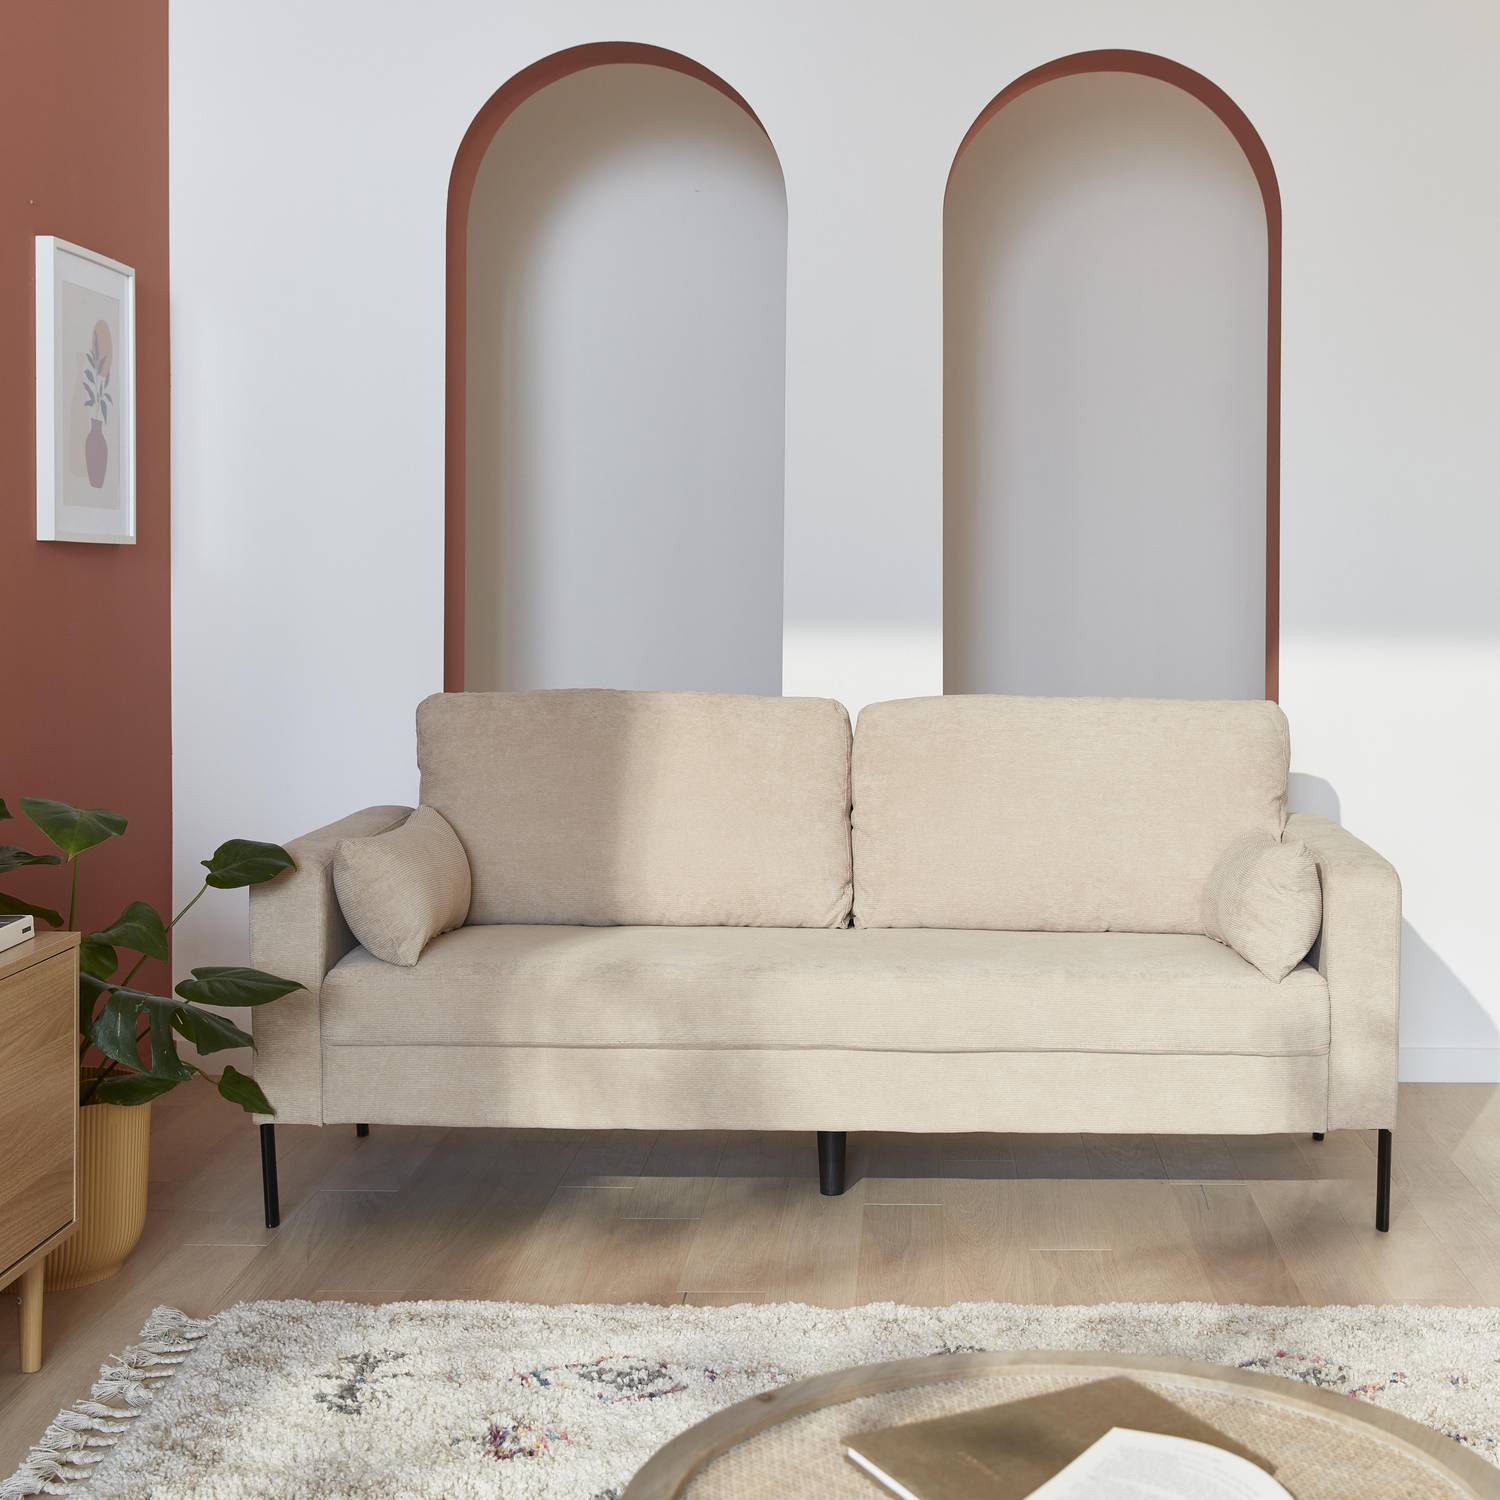 Large 3-seater living room sofa - Beige Corduroy, industrial-style metal legs - Bjorn - Beige Photo1